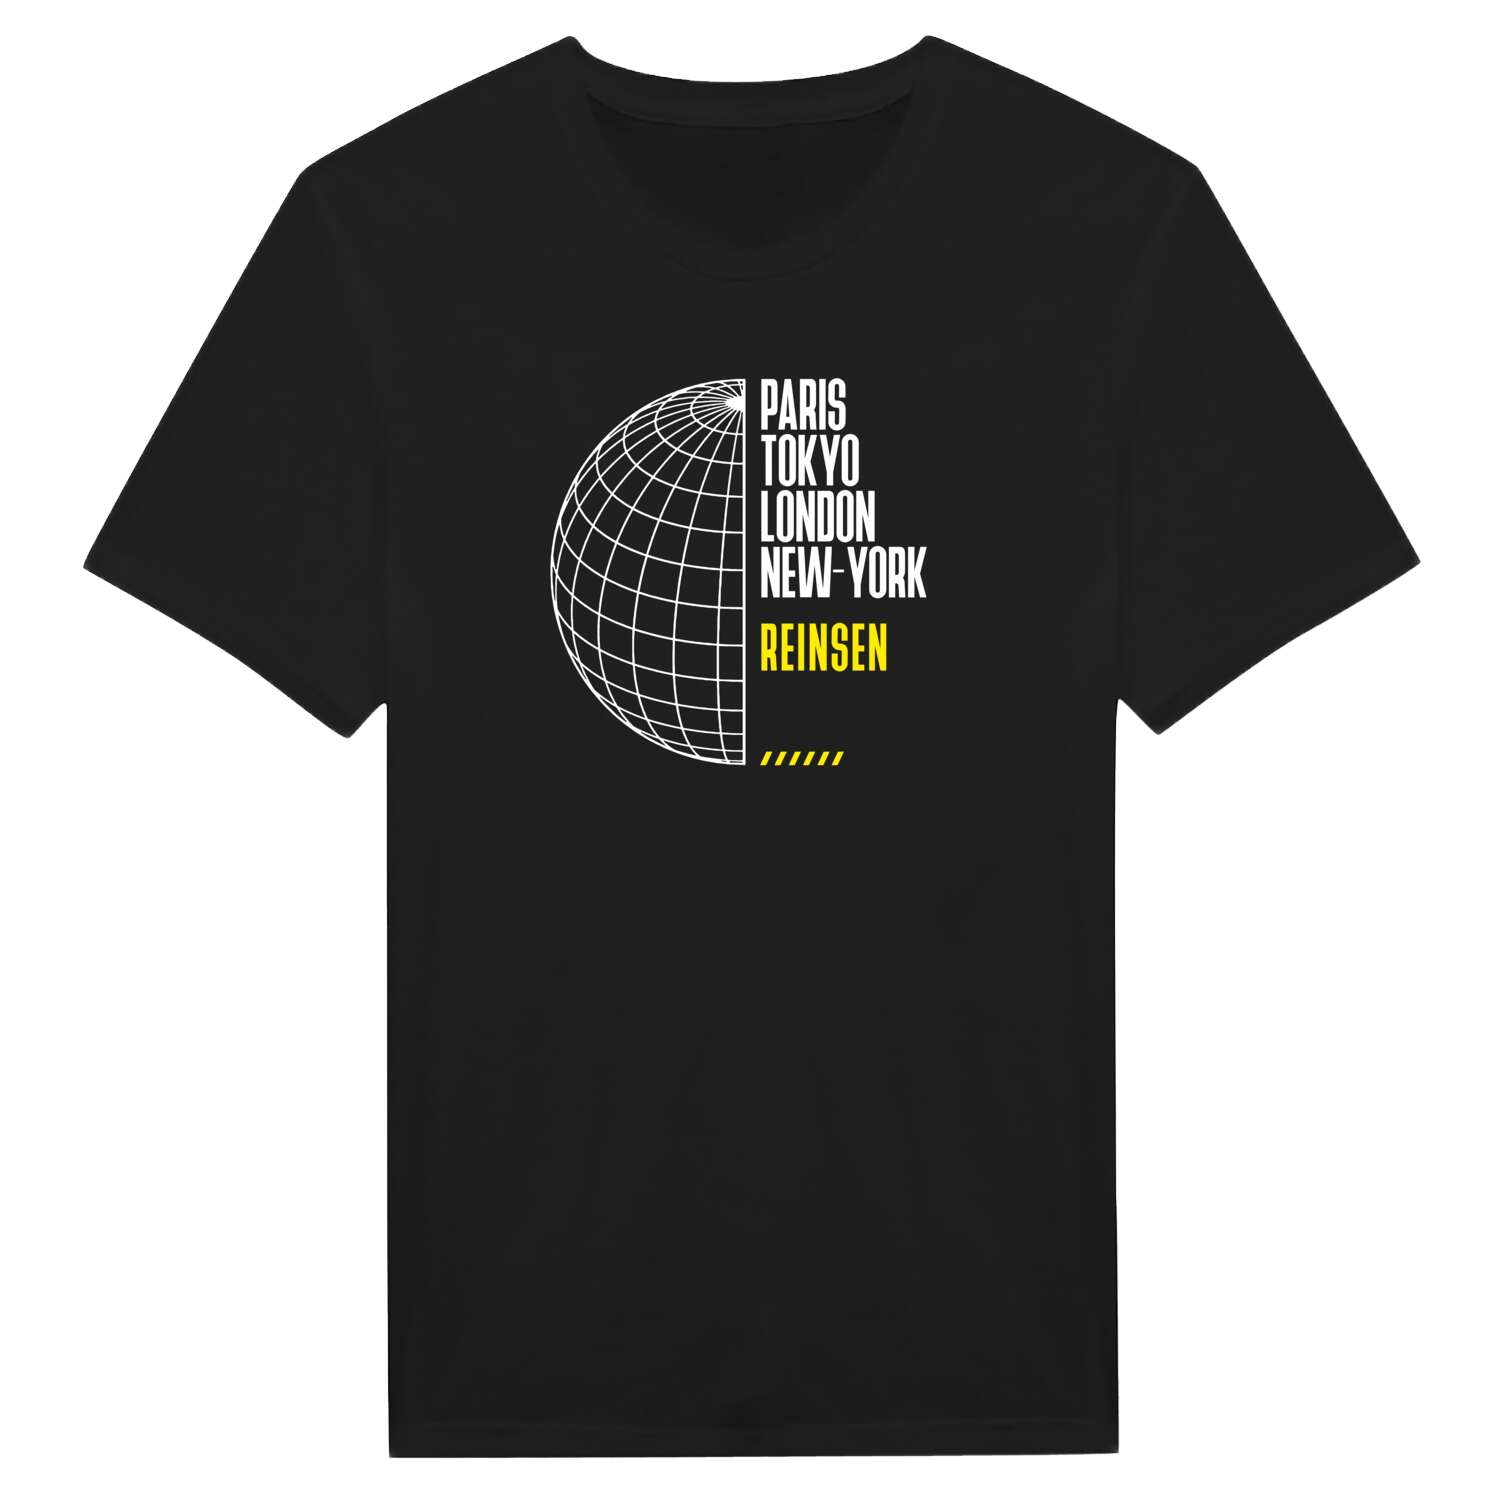 Reinsen T-Shirt »Paris Tokyo London«